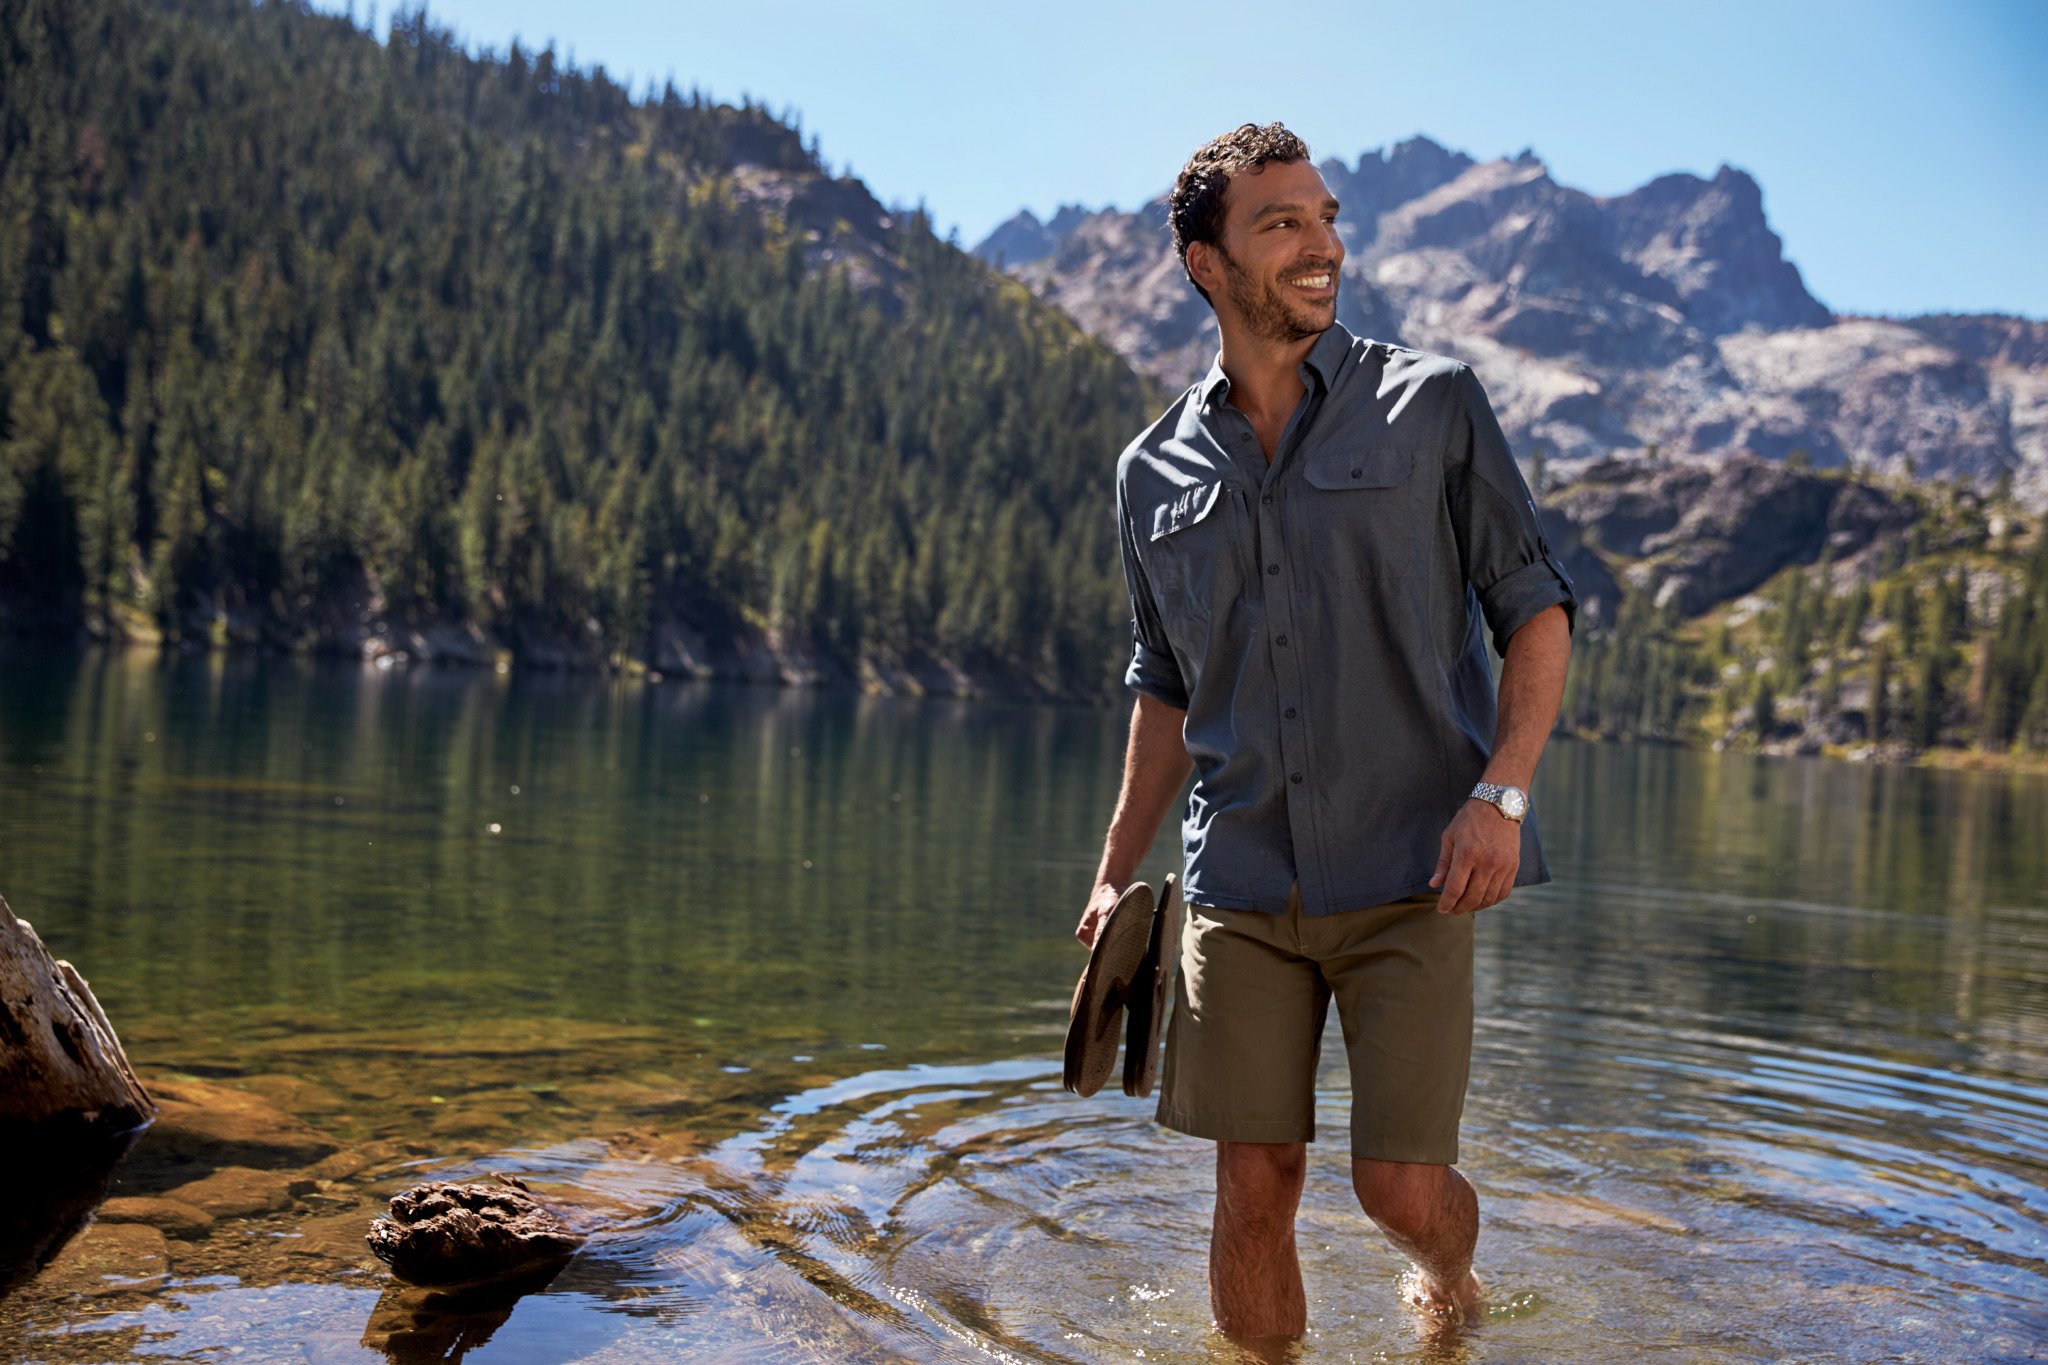 Camp men. Mountain man одежда. Образ для кемпинга мужской. Мужской стиль одежды Summer. Hiker man.